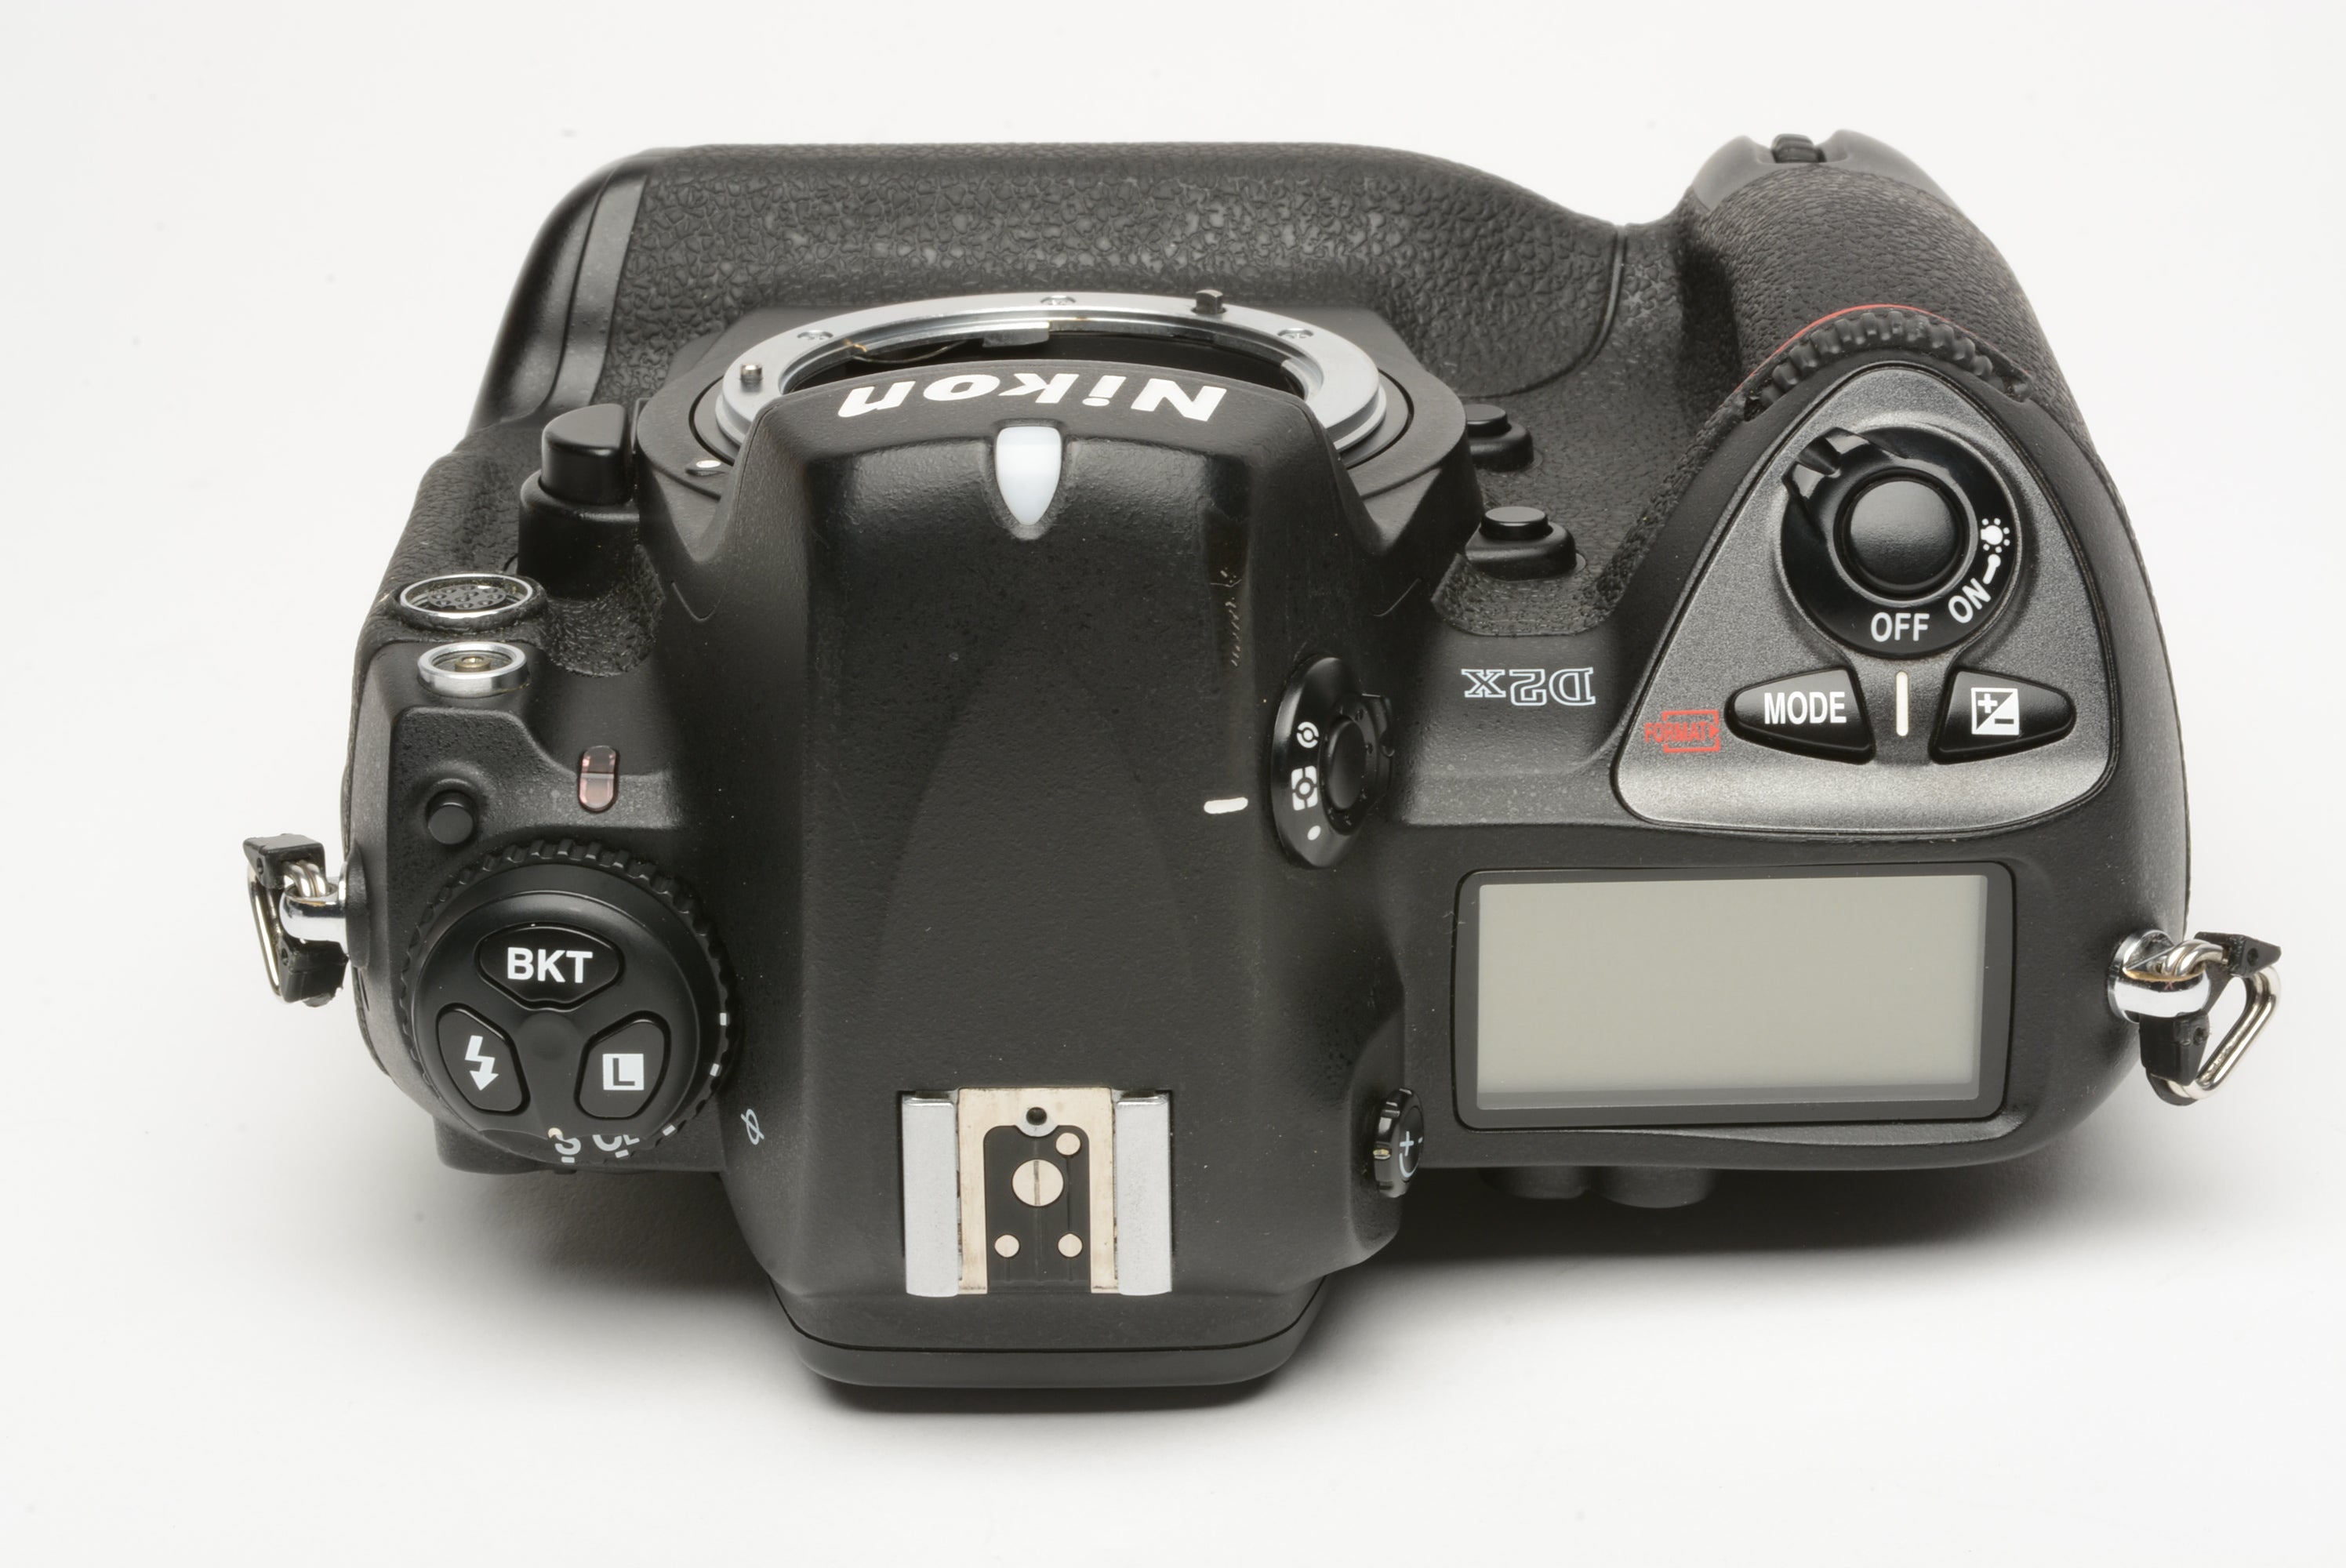 Nikon D2X DSLR Body, batt., AC Adapter, manual, 63,316 Acts, very